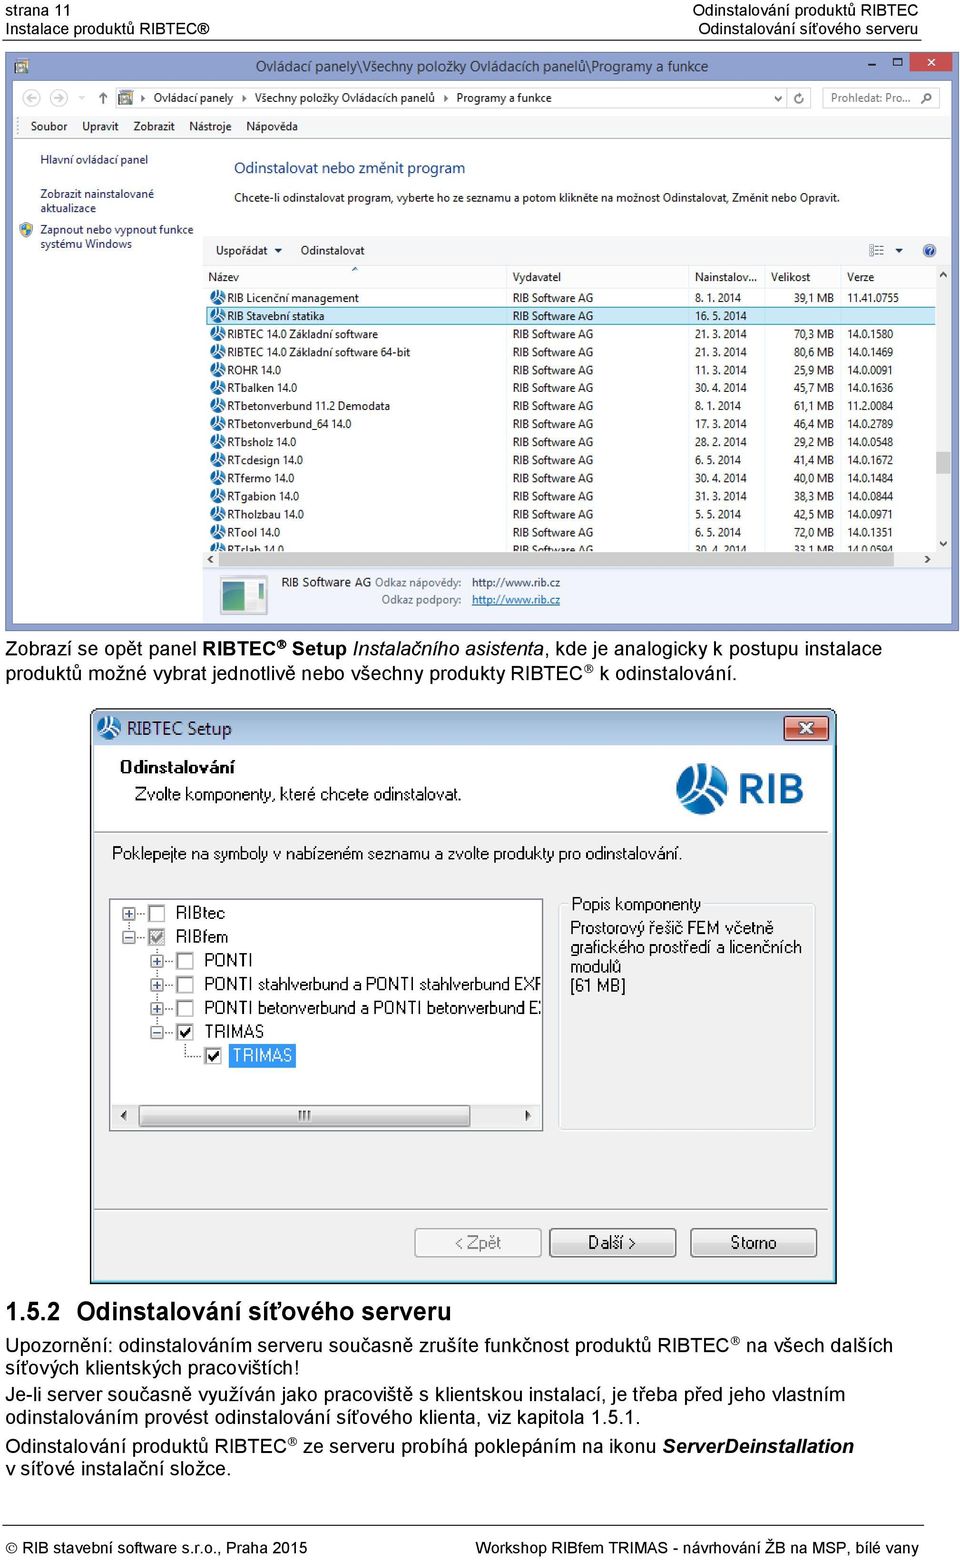 2 Odinstalování síťového serveru Upozornění: odinstalováním serveru současně zrušíte funkčnost produktů RIBTEC na všech dalších síťových klientských pracovištích!